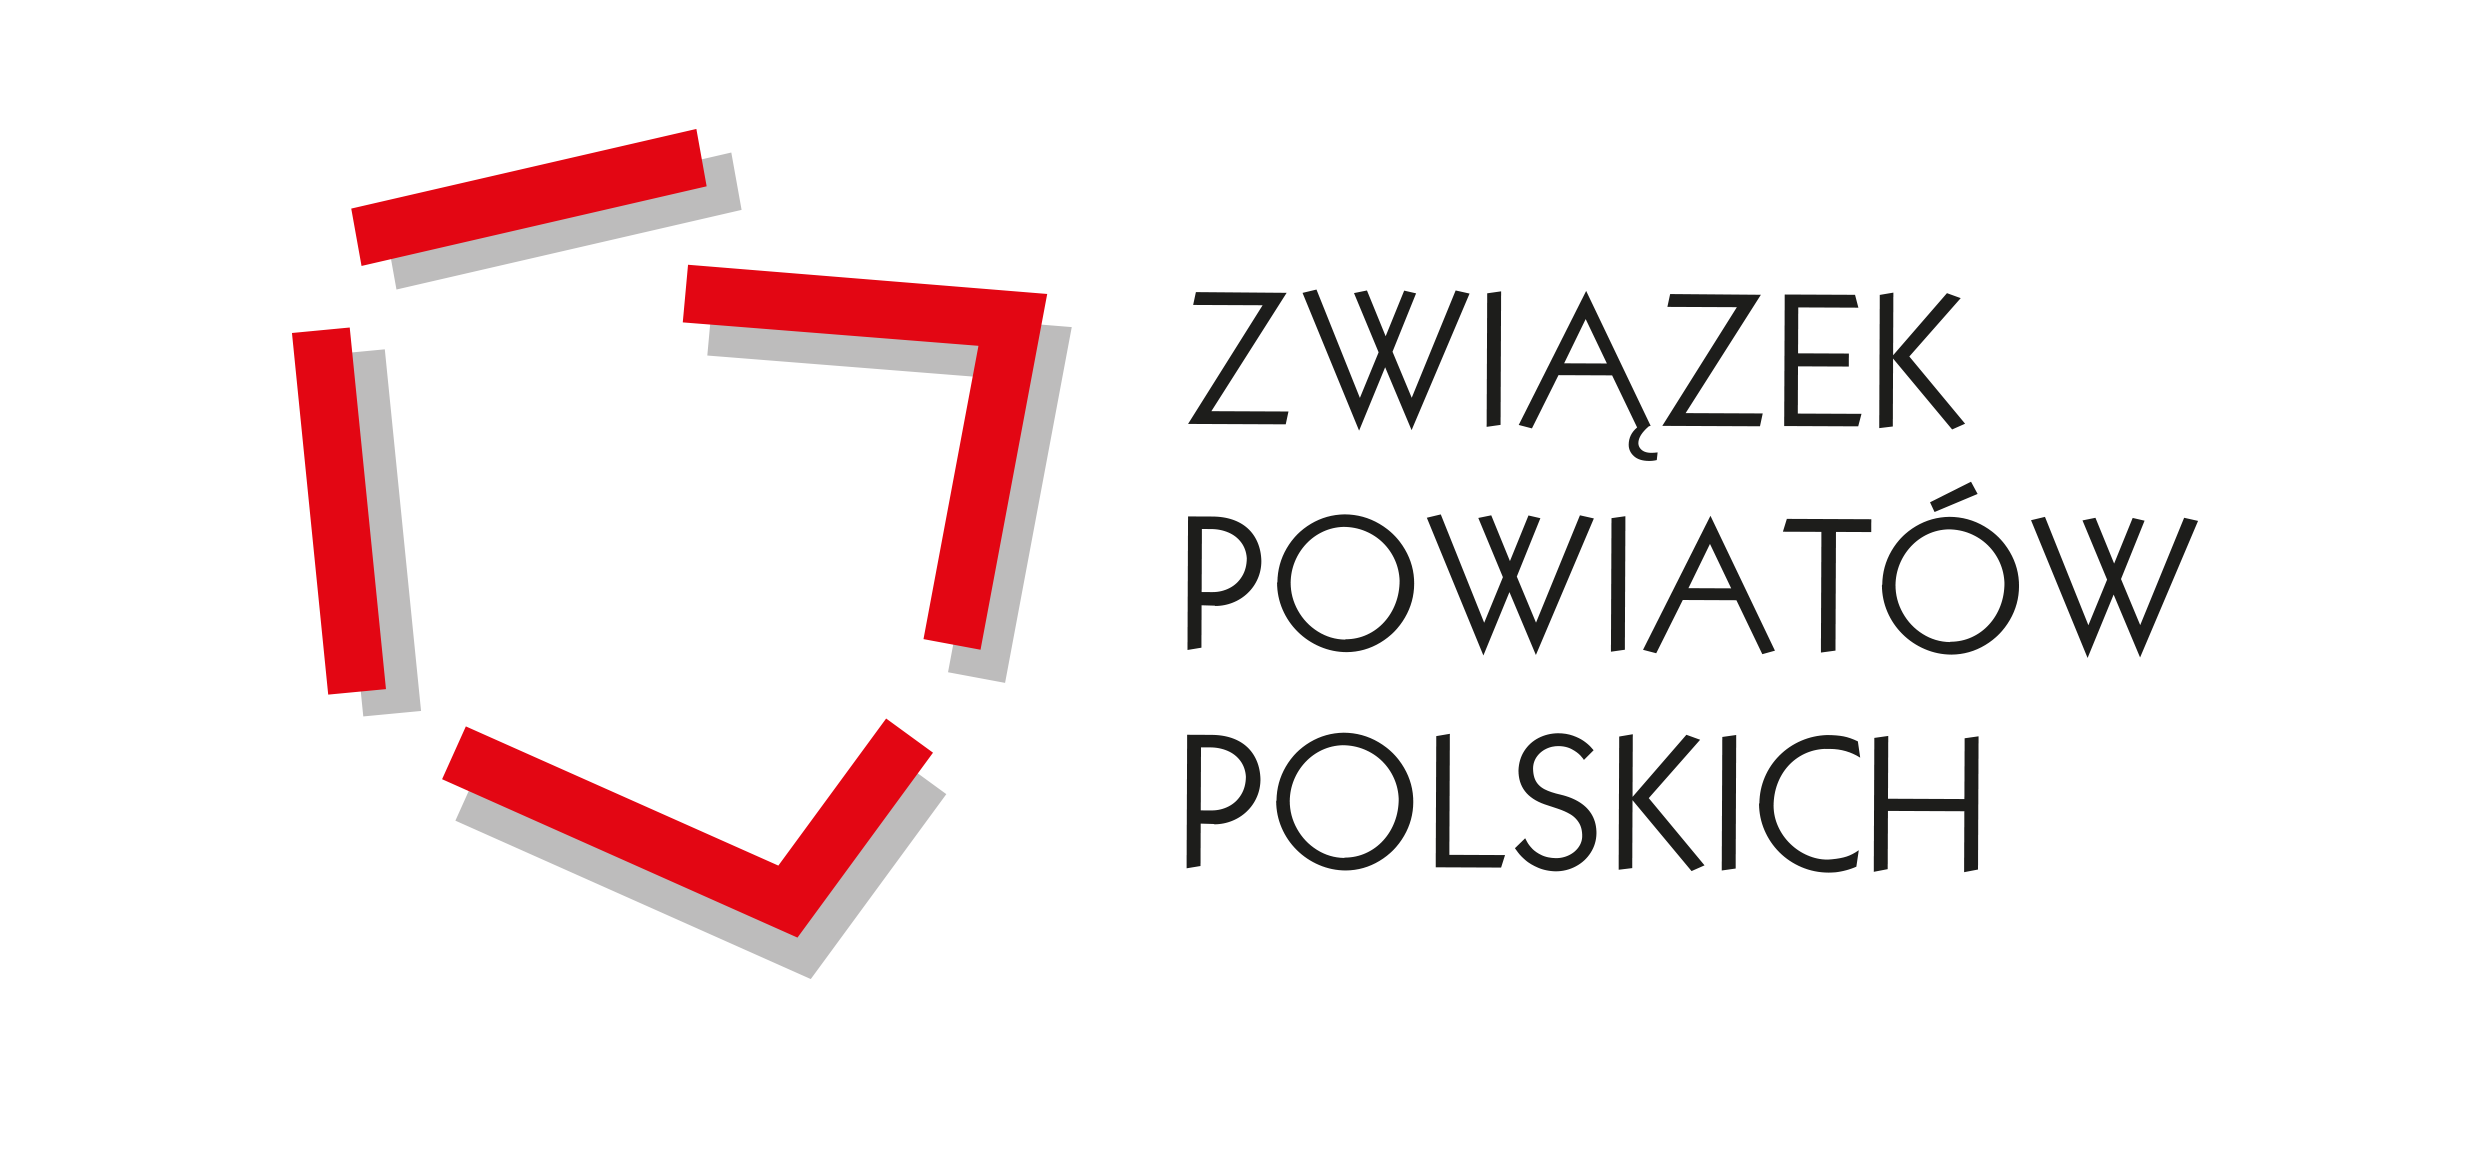 Związek Powiatów Polskich 